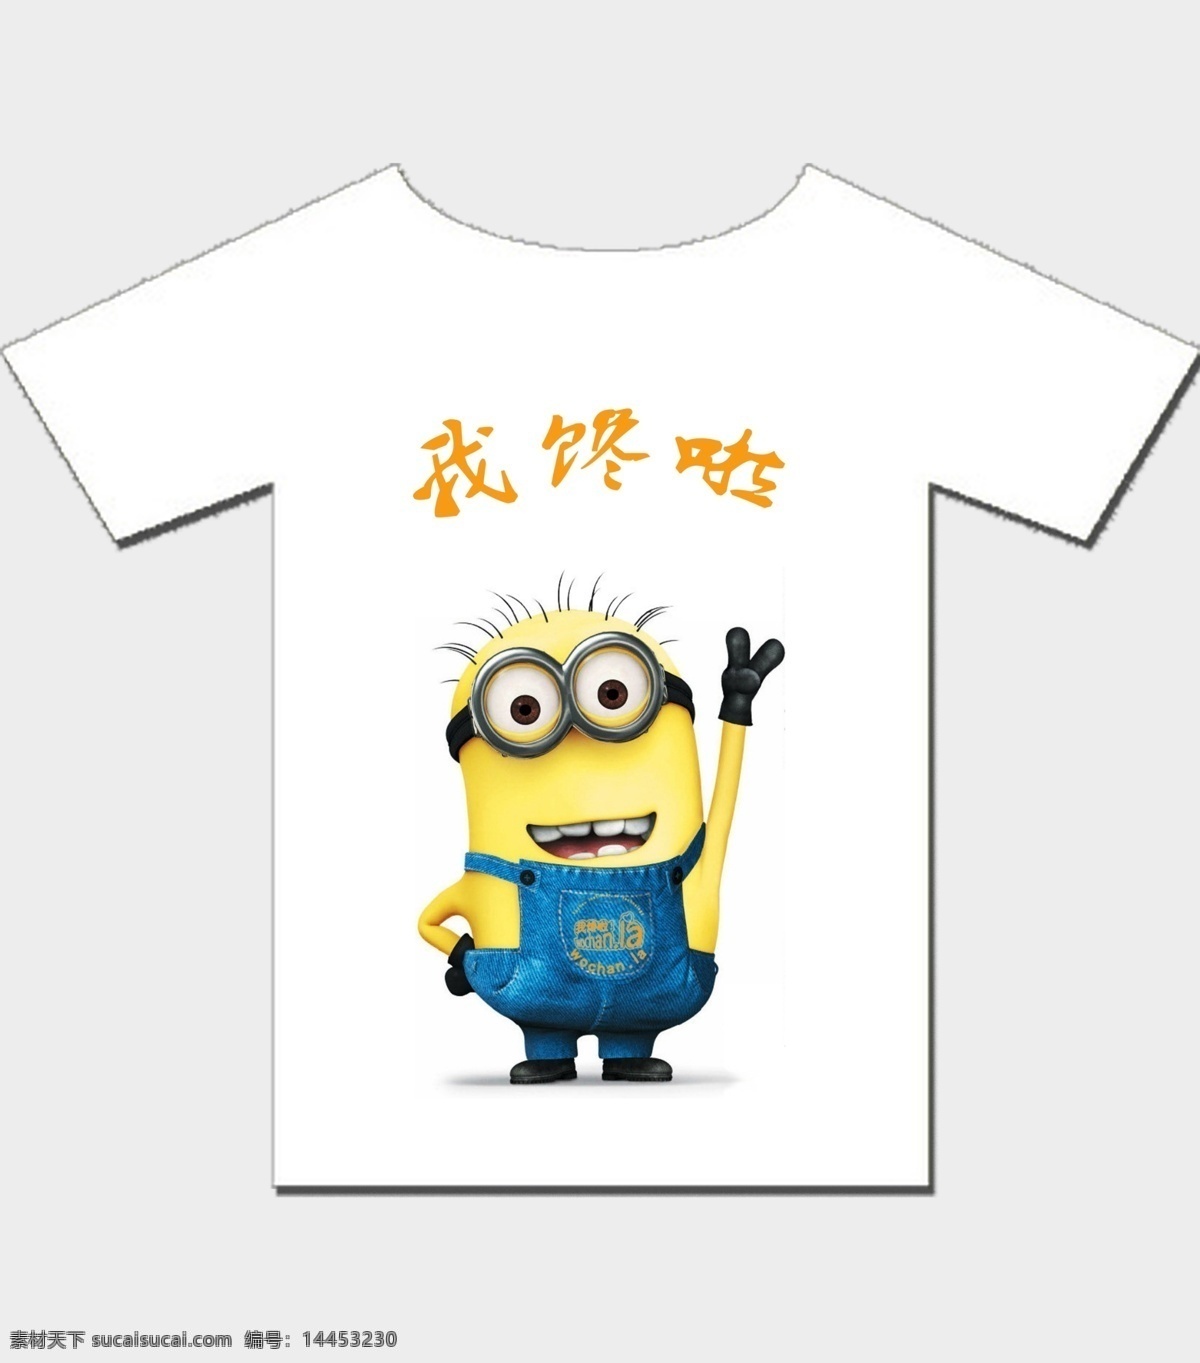 小黄人文化衫 小黄人 文化衫 logo 白色